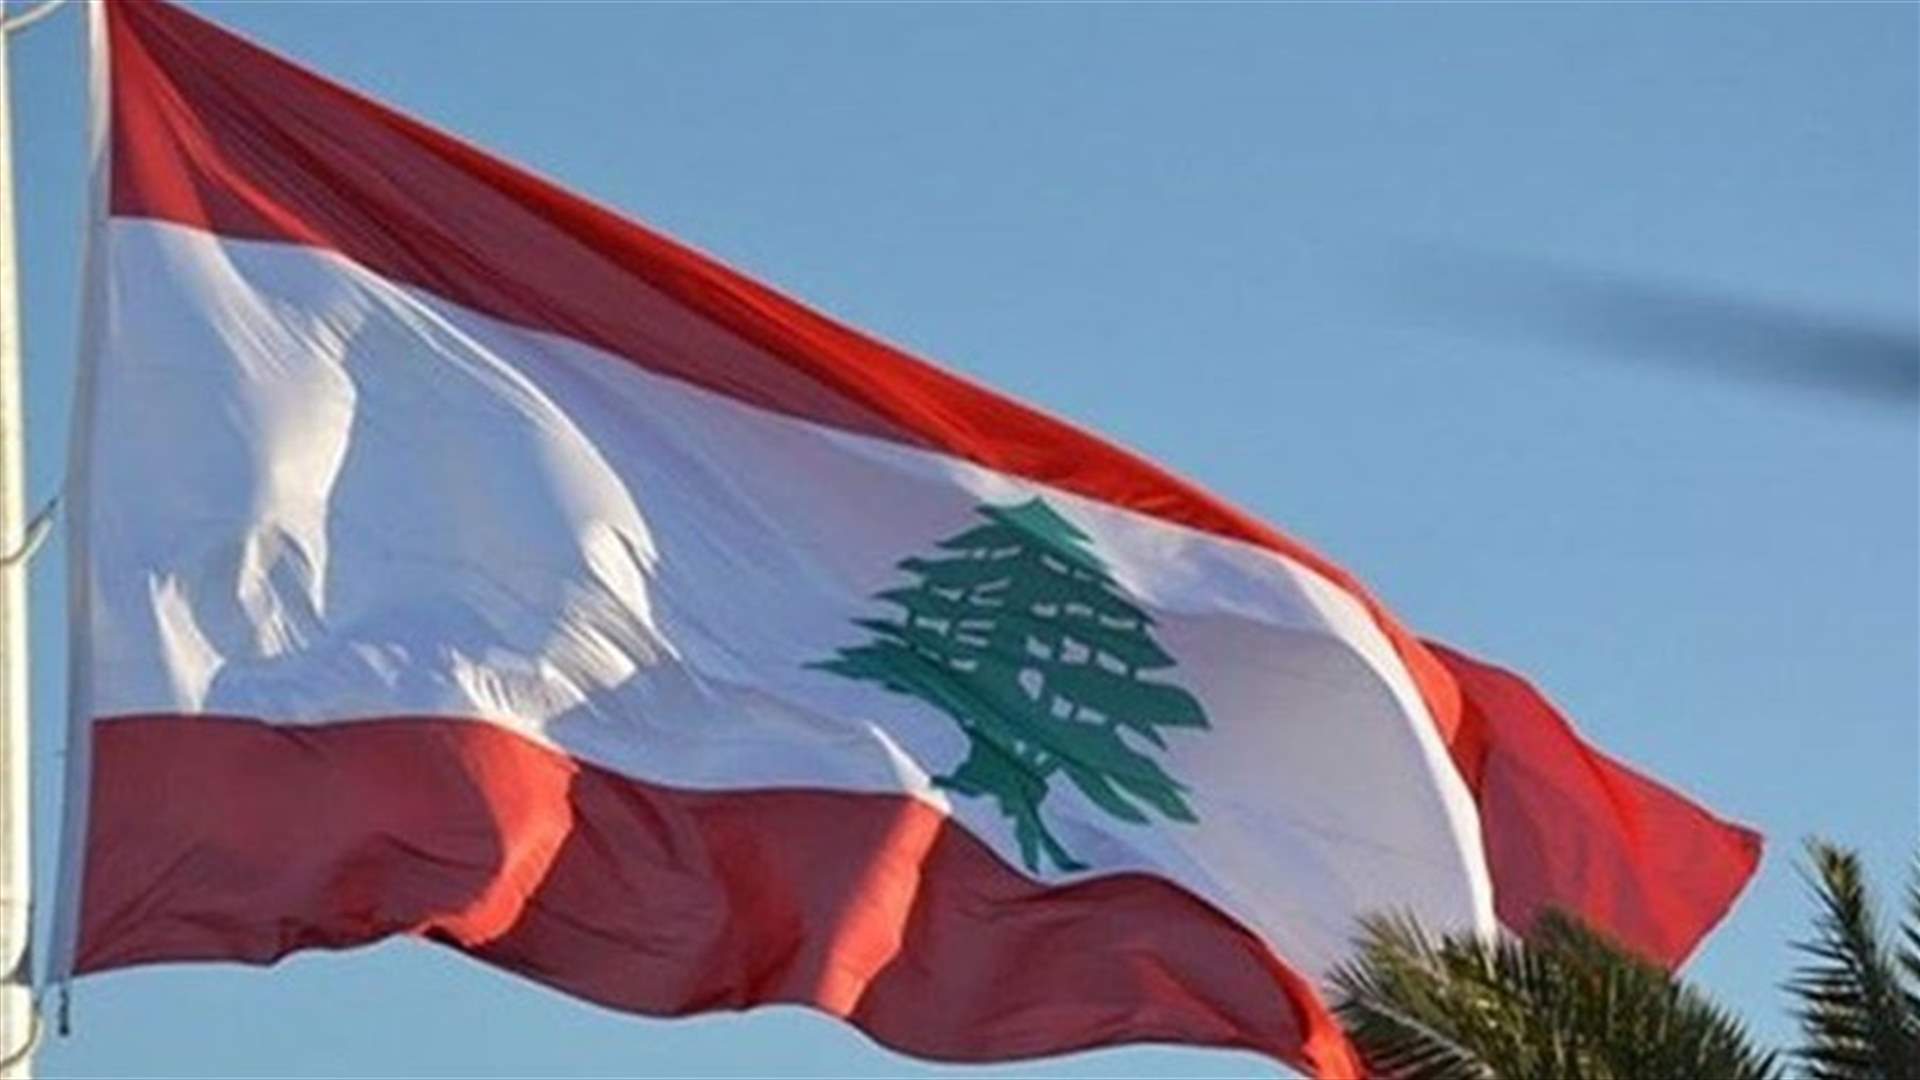 مجموعة الدعم الدولية من أجل لبنان: على القيادة اللبنانية أن تعمل لخدمة الشعب وتعيد البلد إلى مسار الازدهار